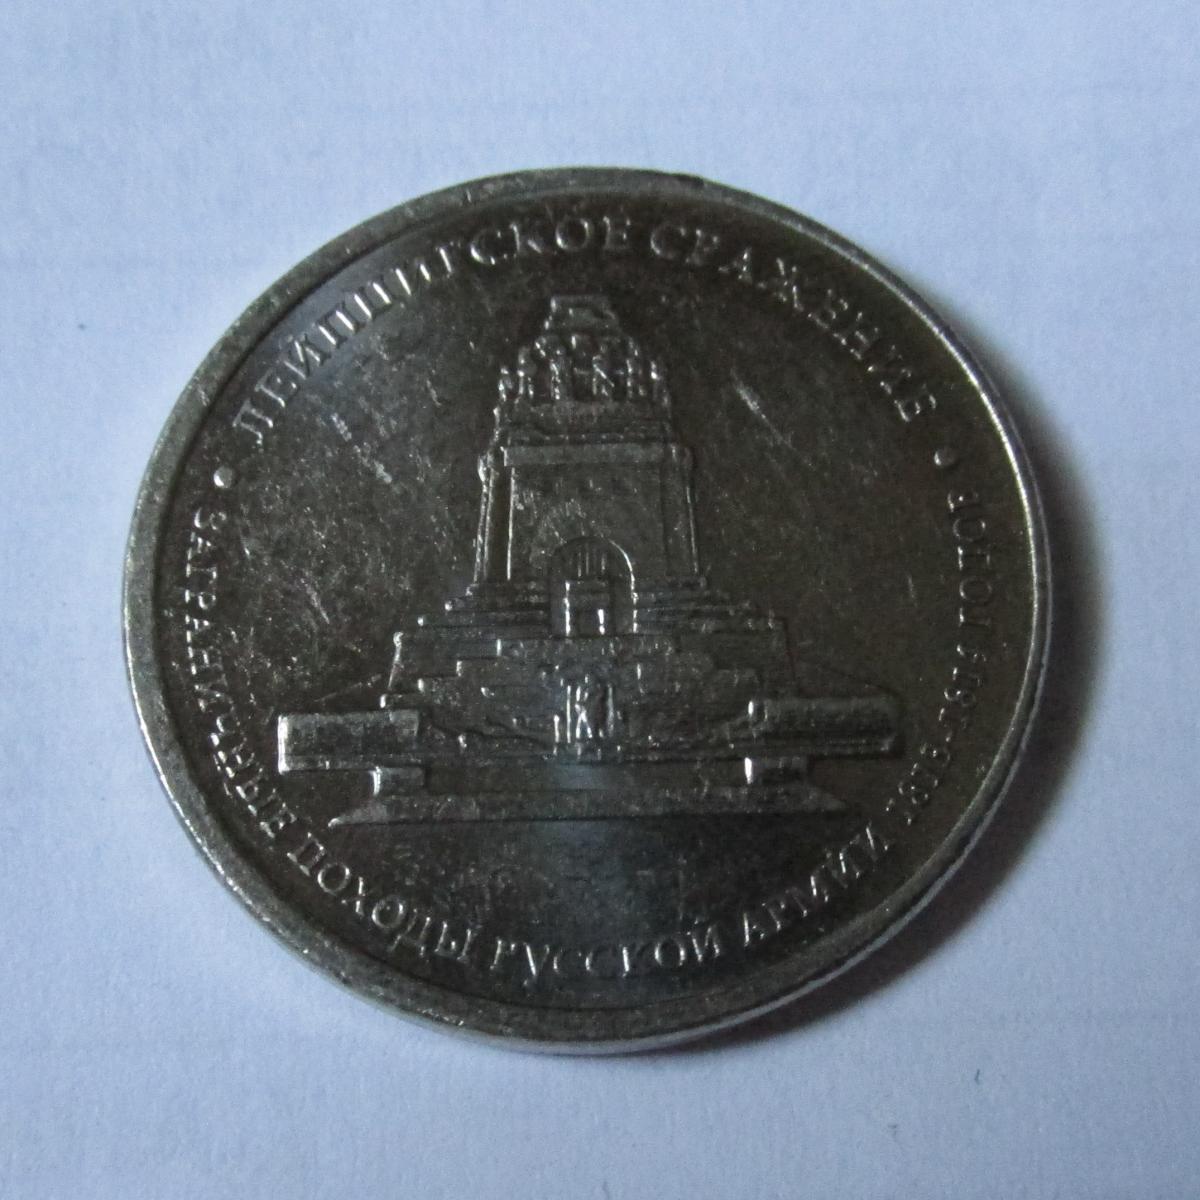 5 рублей 2012 г. ММД 